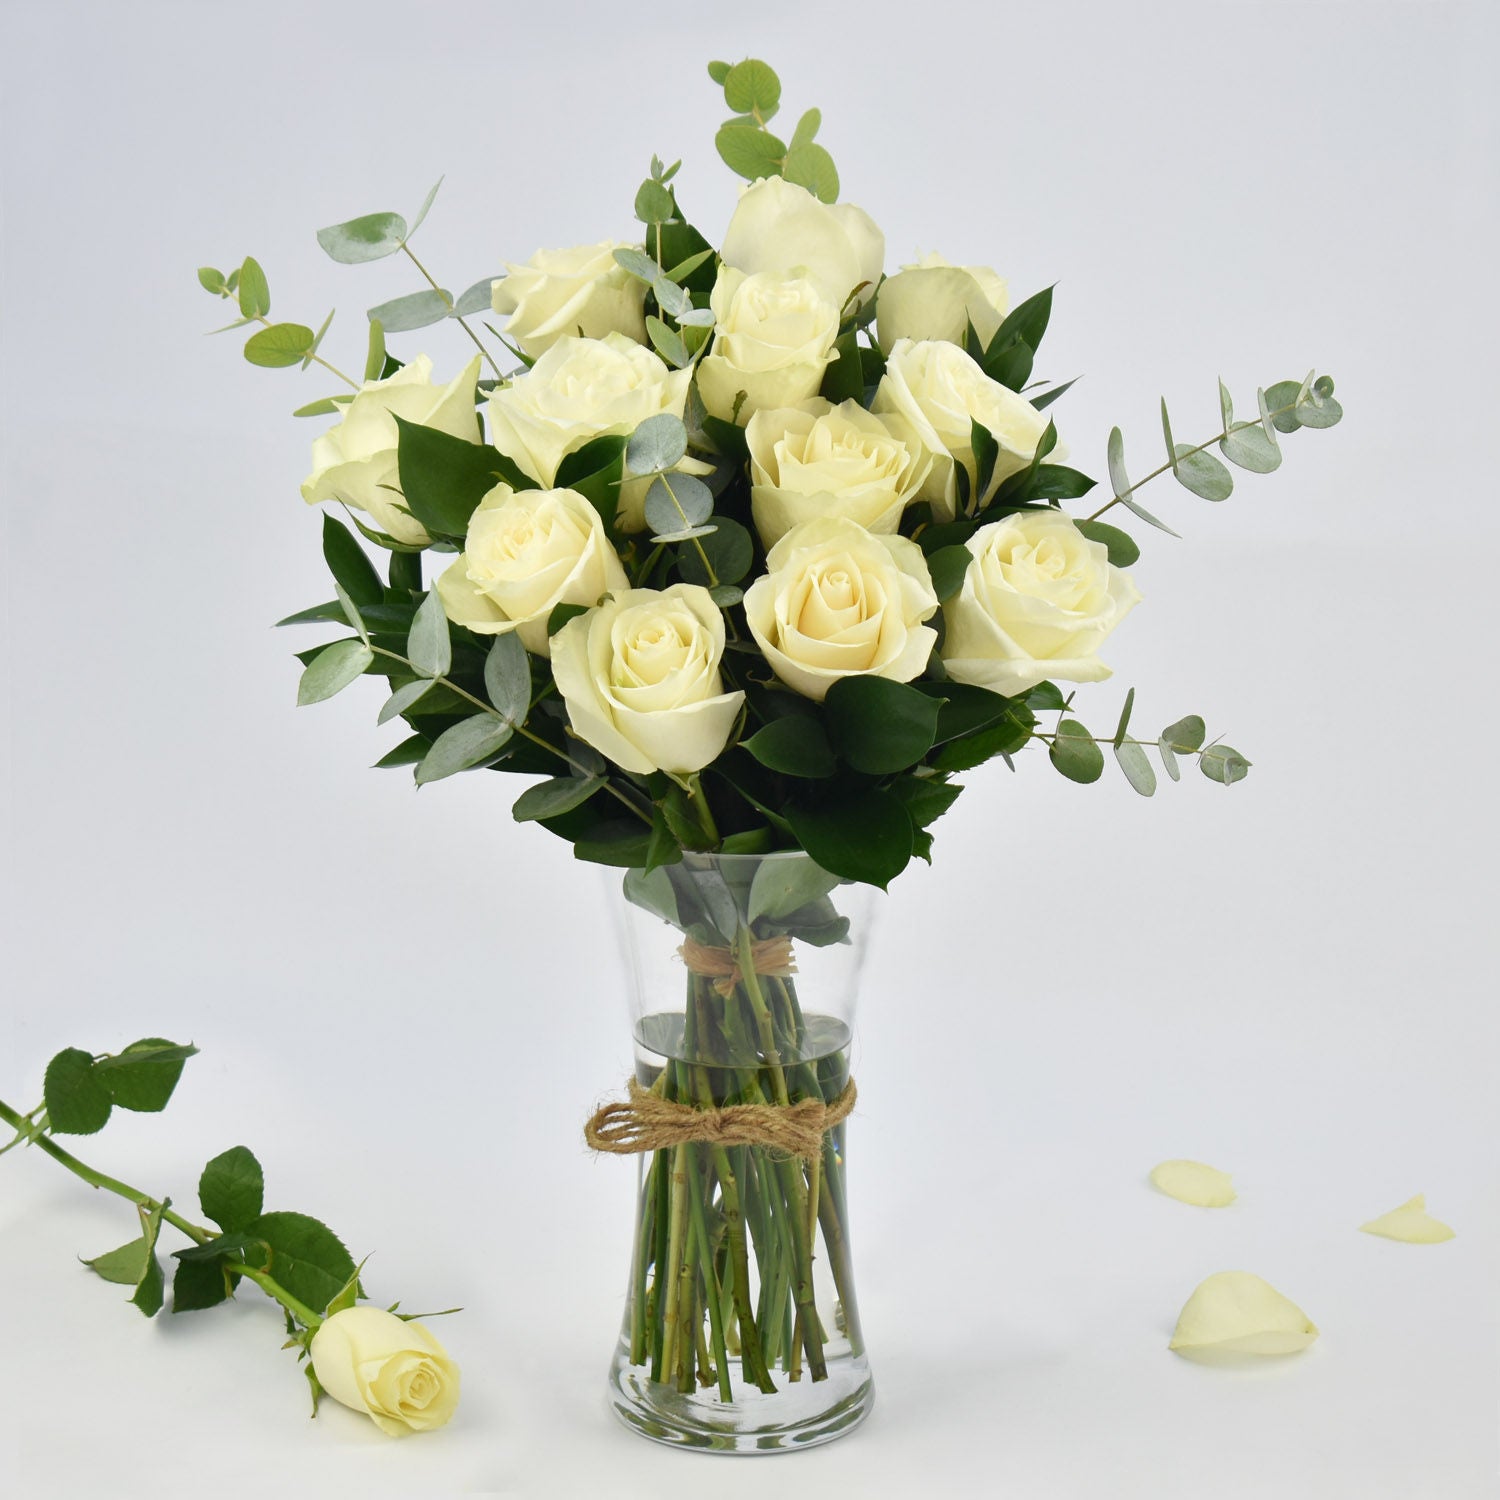 Vase Of Elegant White Roses